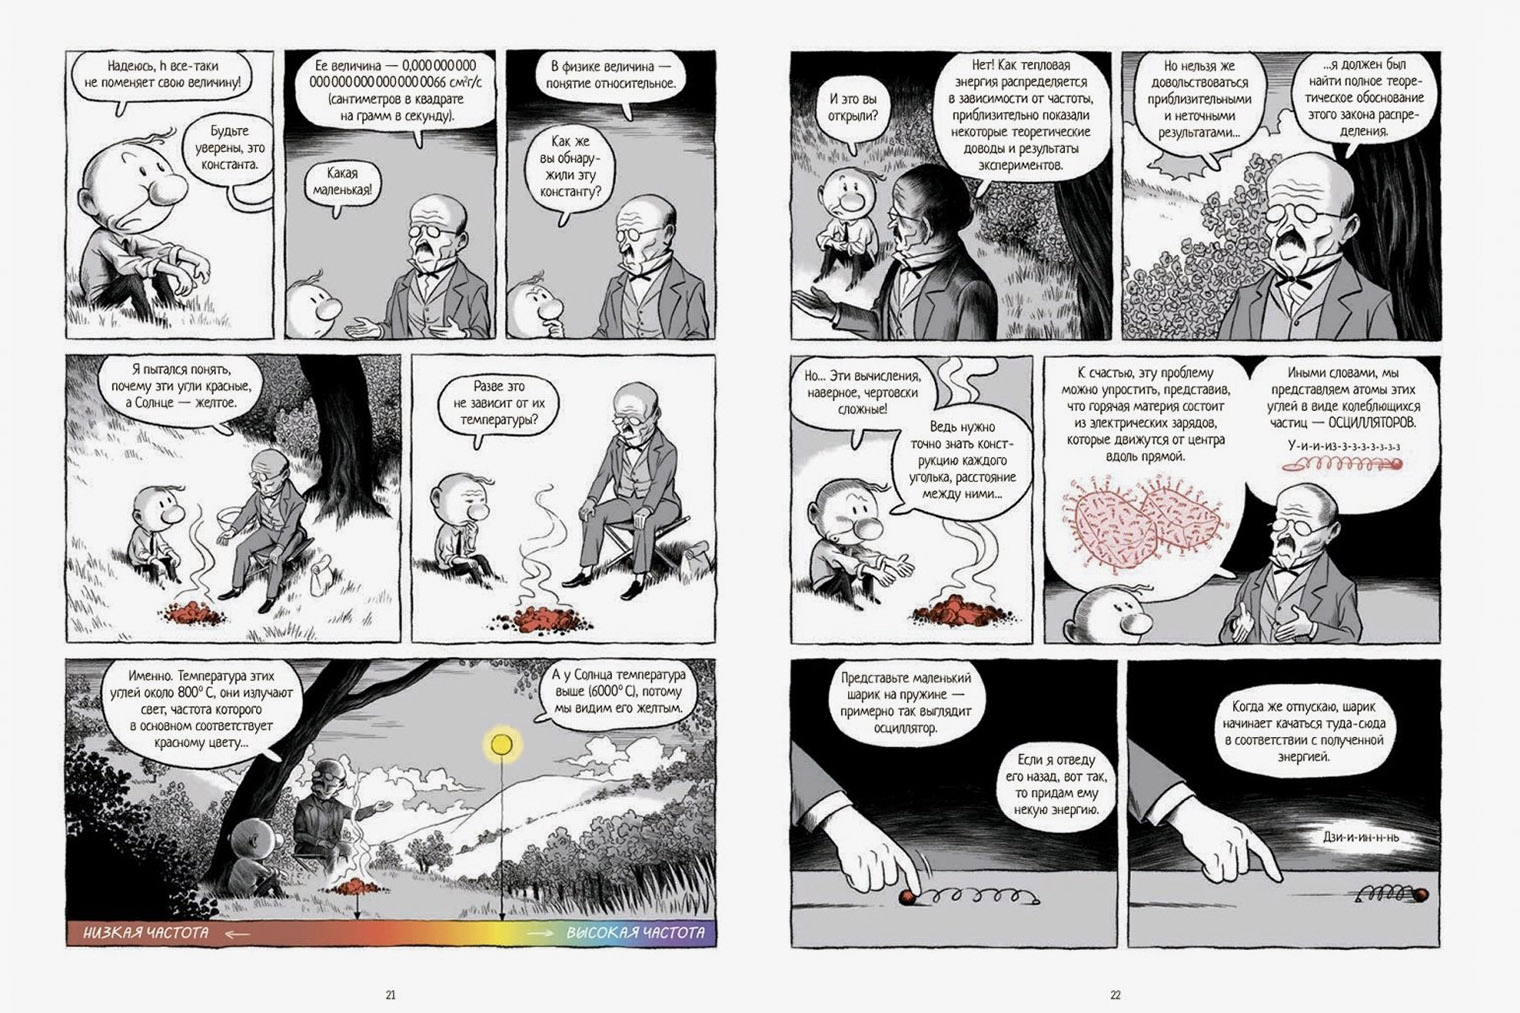 Визуальный стиль Матьё Бюрниа напоминает рассказы о Тинтине: это черно⁠-⁠белый комикс с редкими, но яркими вкраплениями цвета